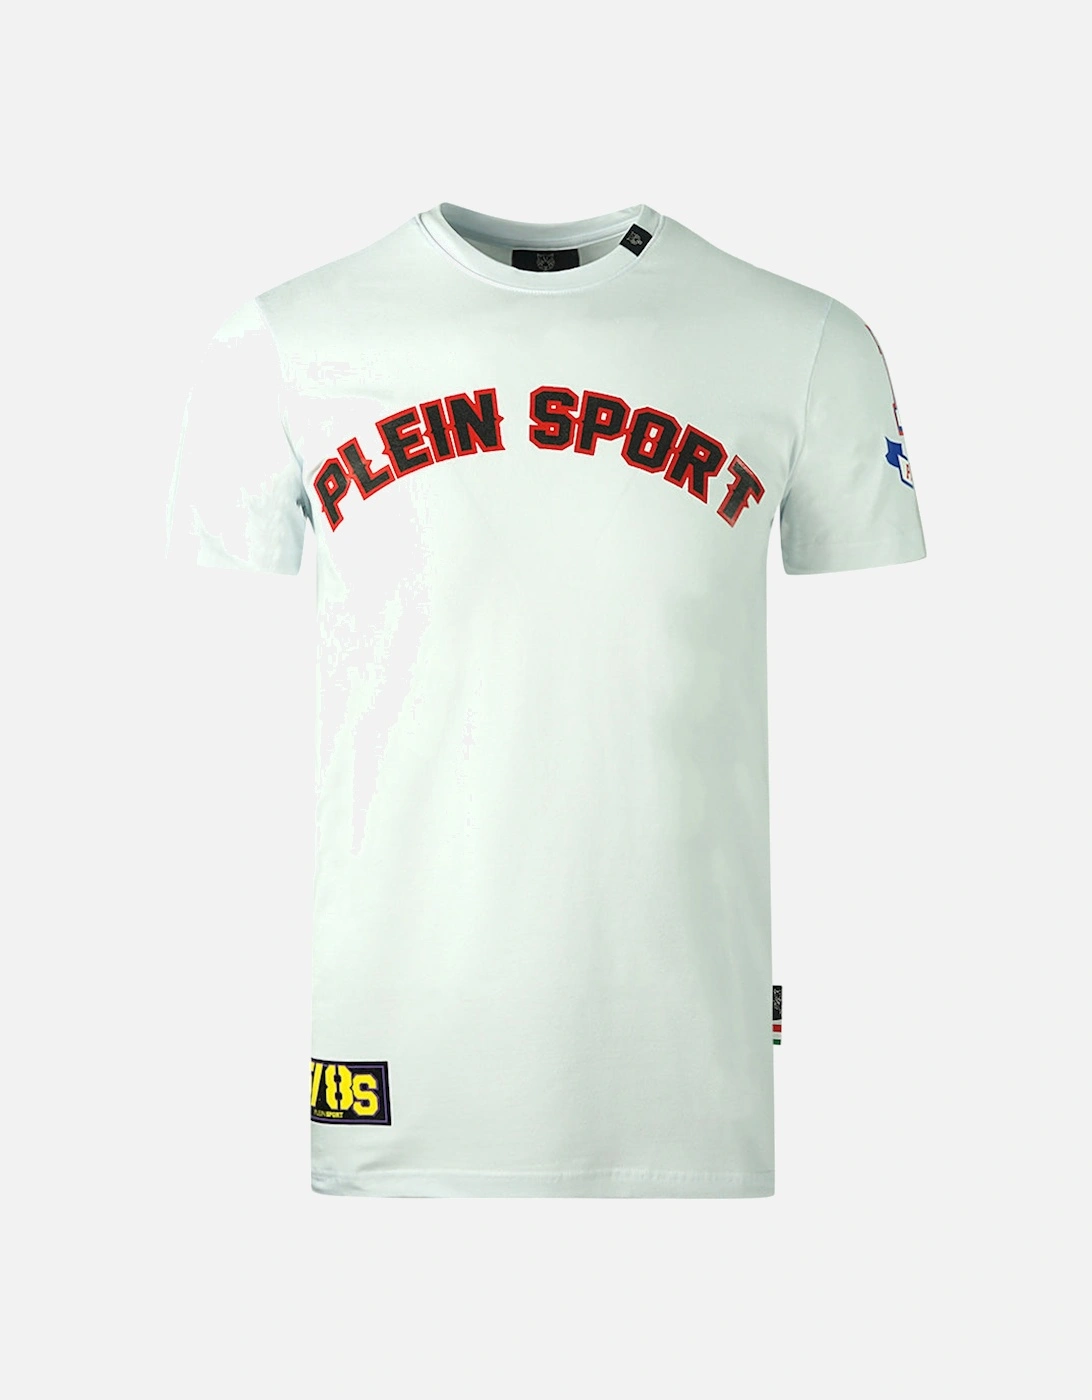 Plein Sport Multi Colour Logos White T-Shirt, 3 of 2